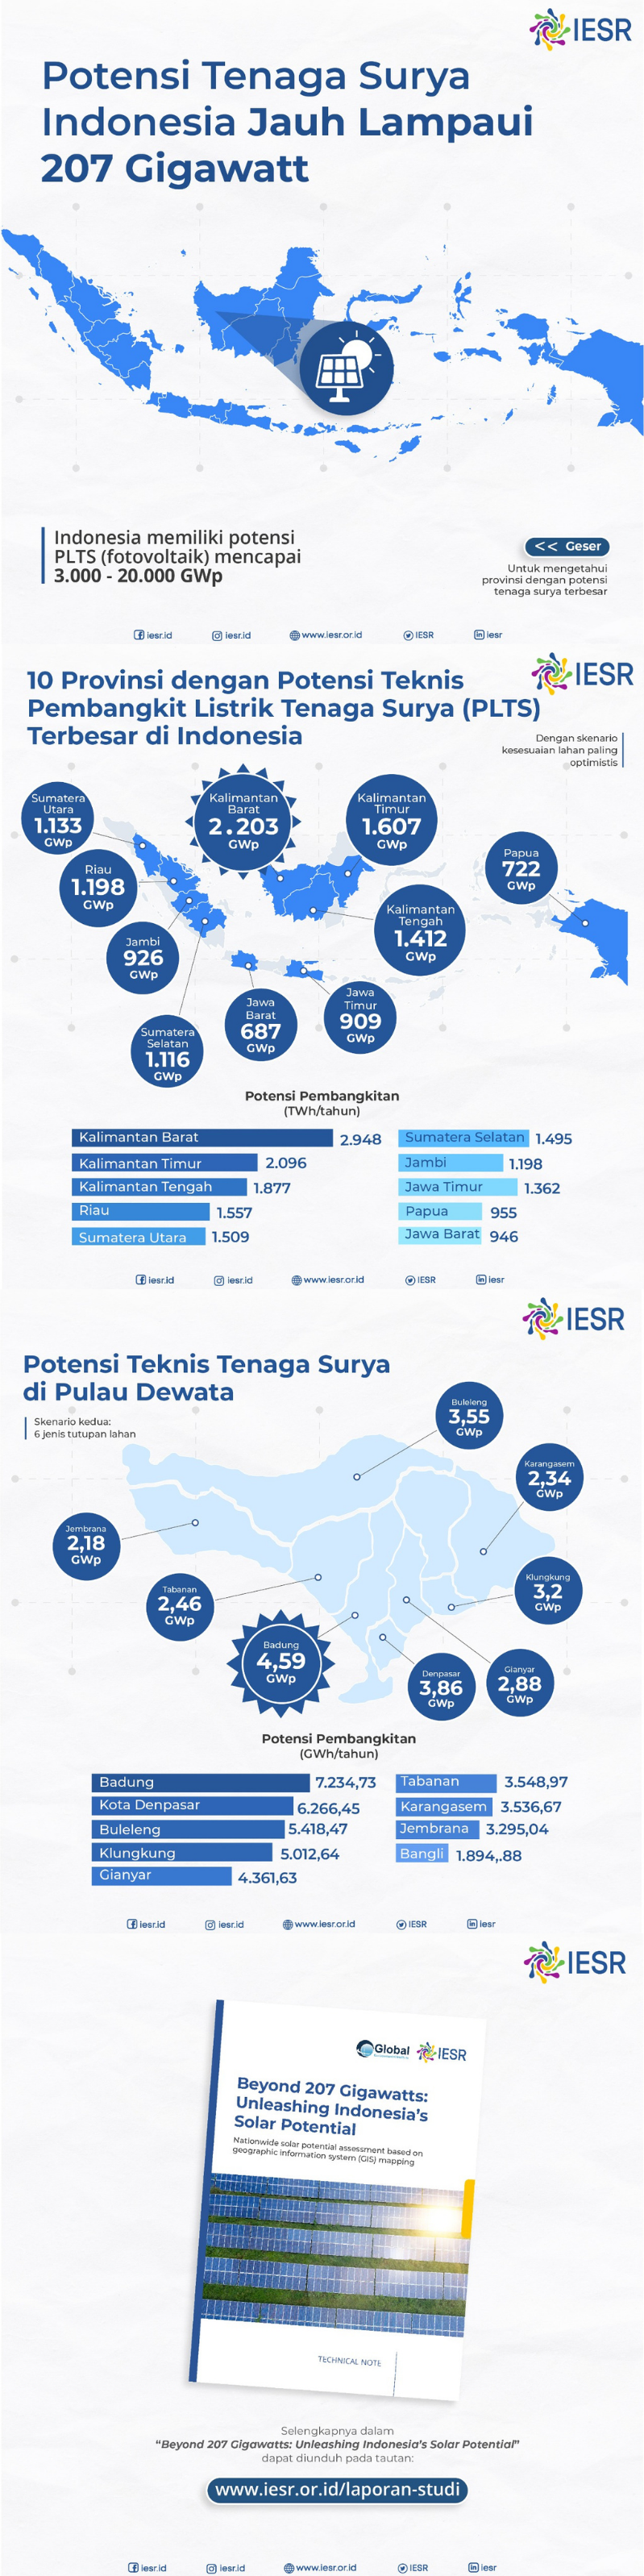 Potensi tenaga surya di Indonesia